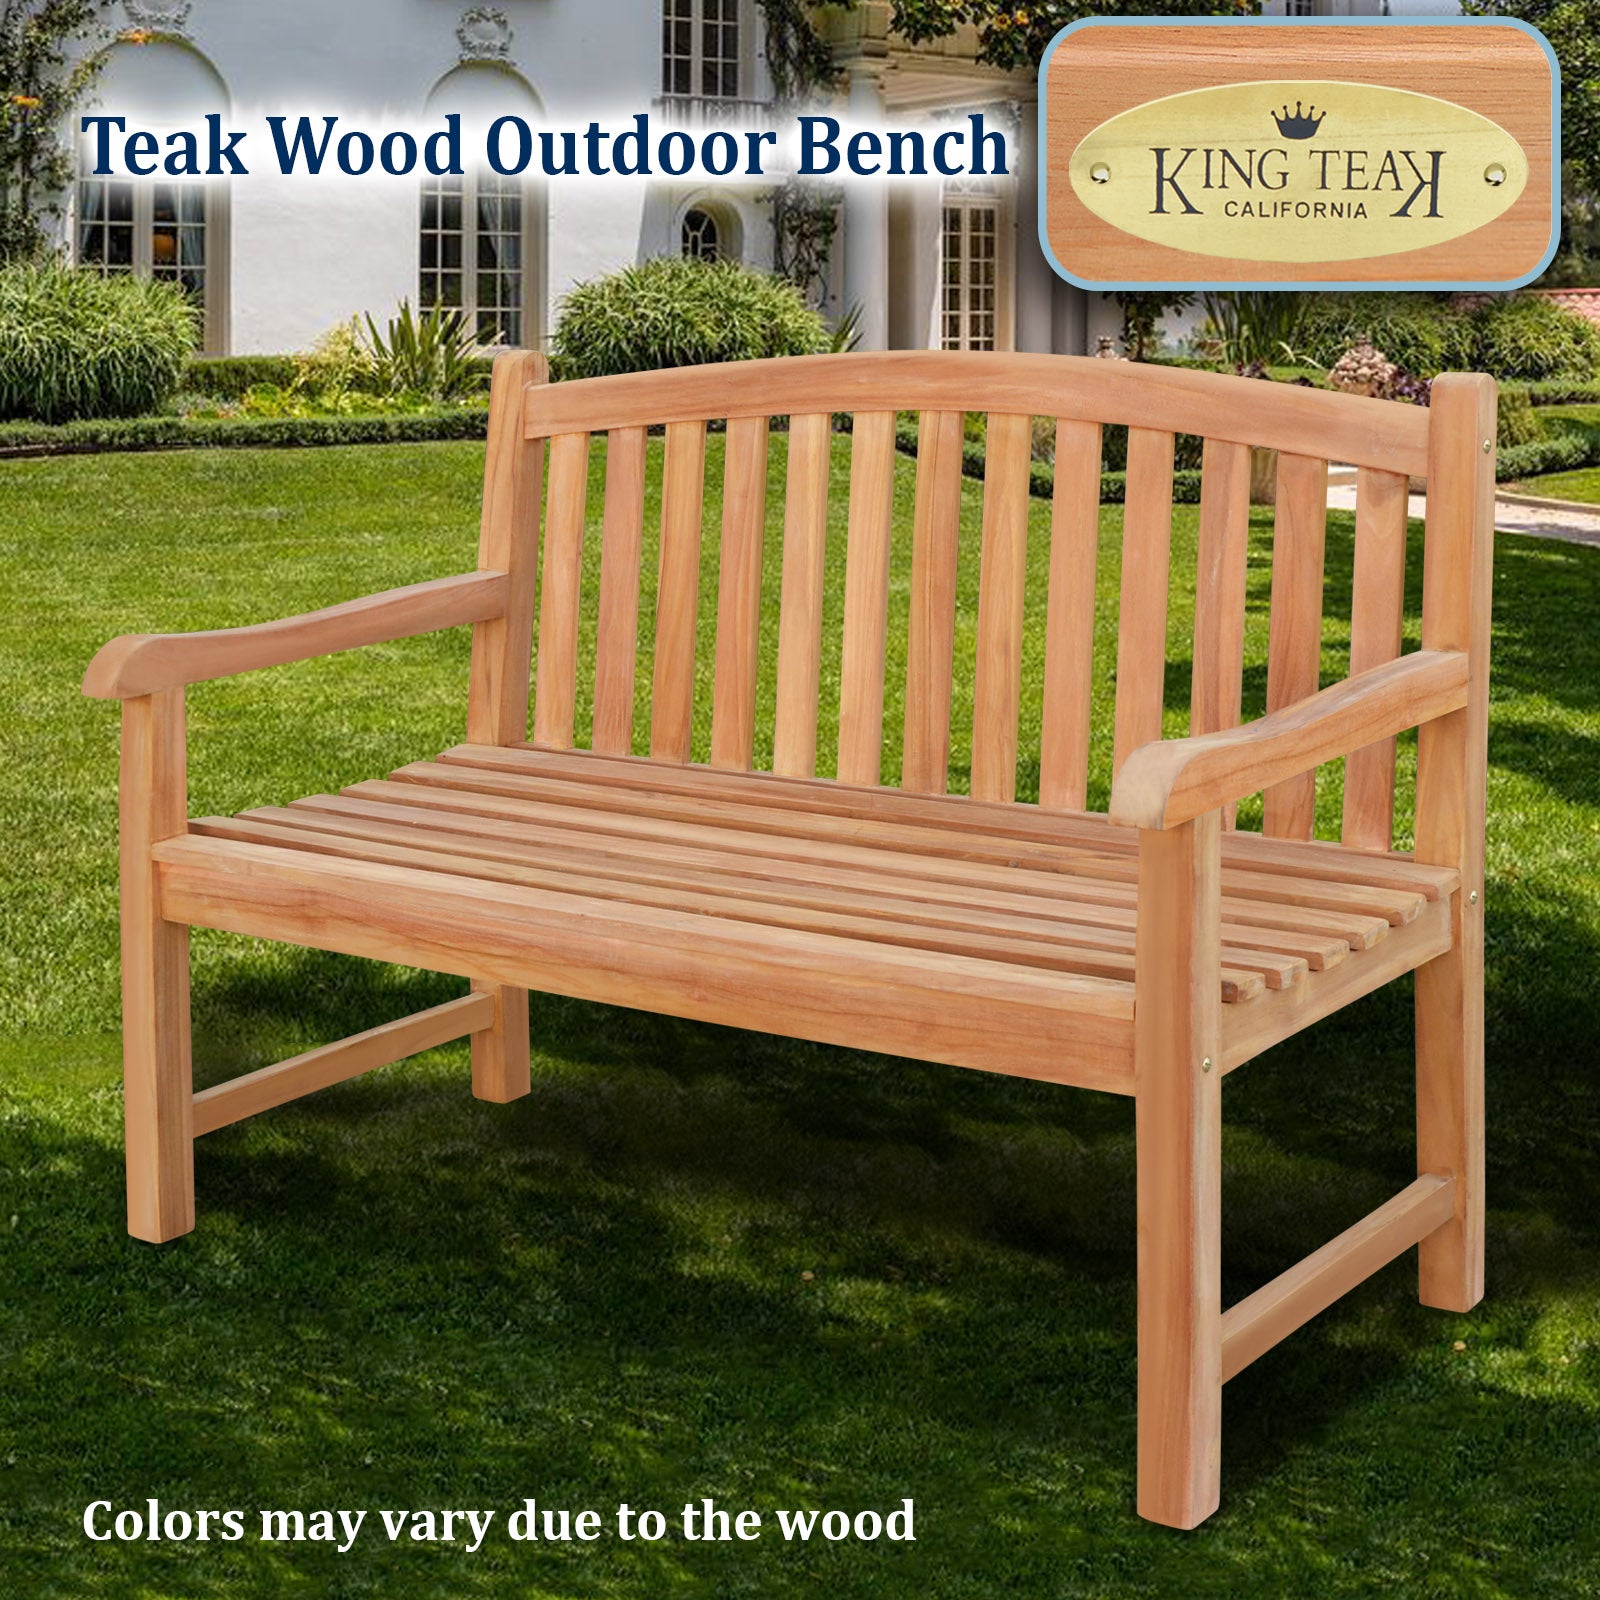 Golden Teak Wood Garden Bench Outdoor Terrace Patio 4ft Long Seating F